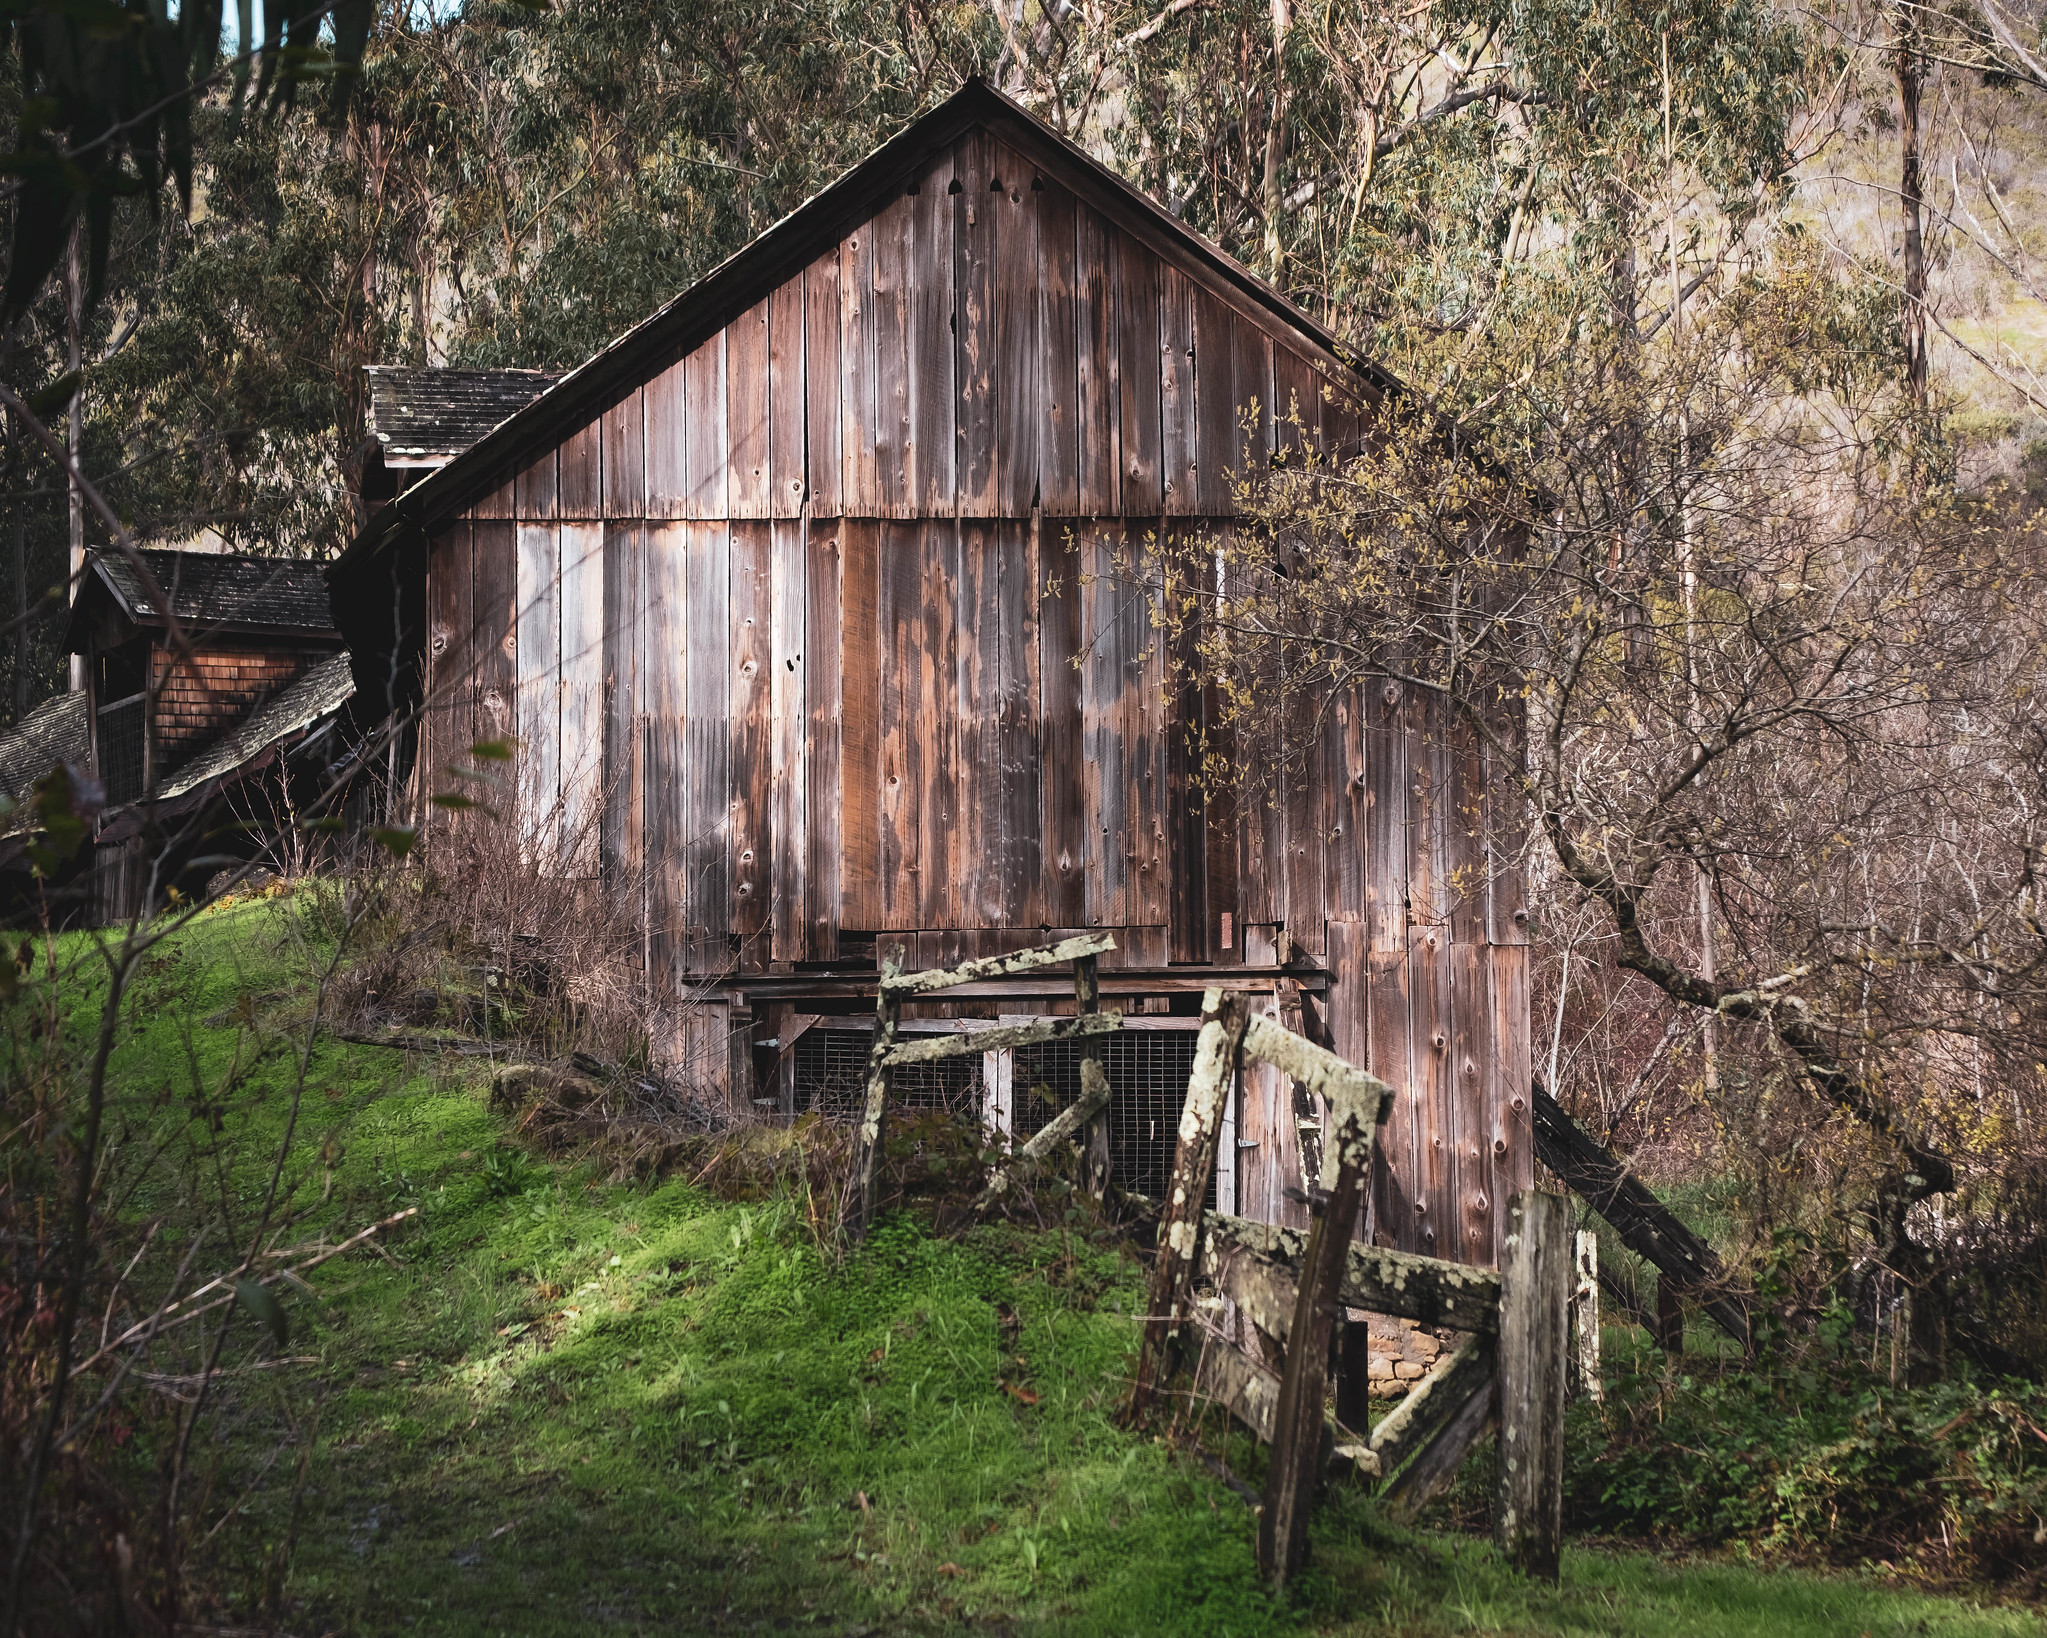 Mills Creek Barn - Photo by @bgwashburn on Flickr